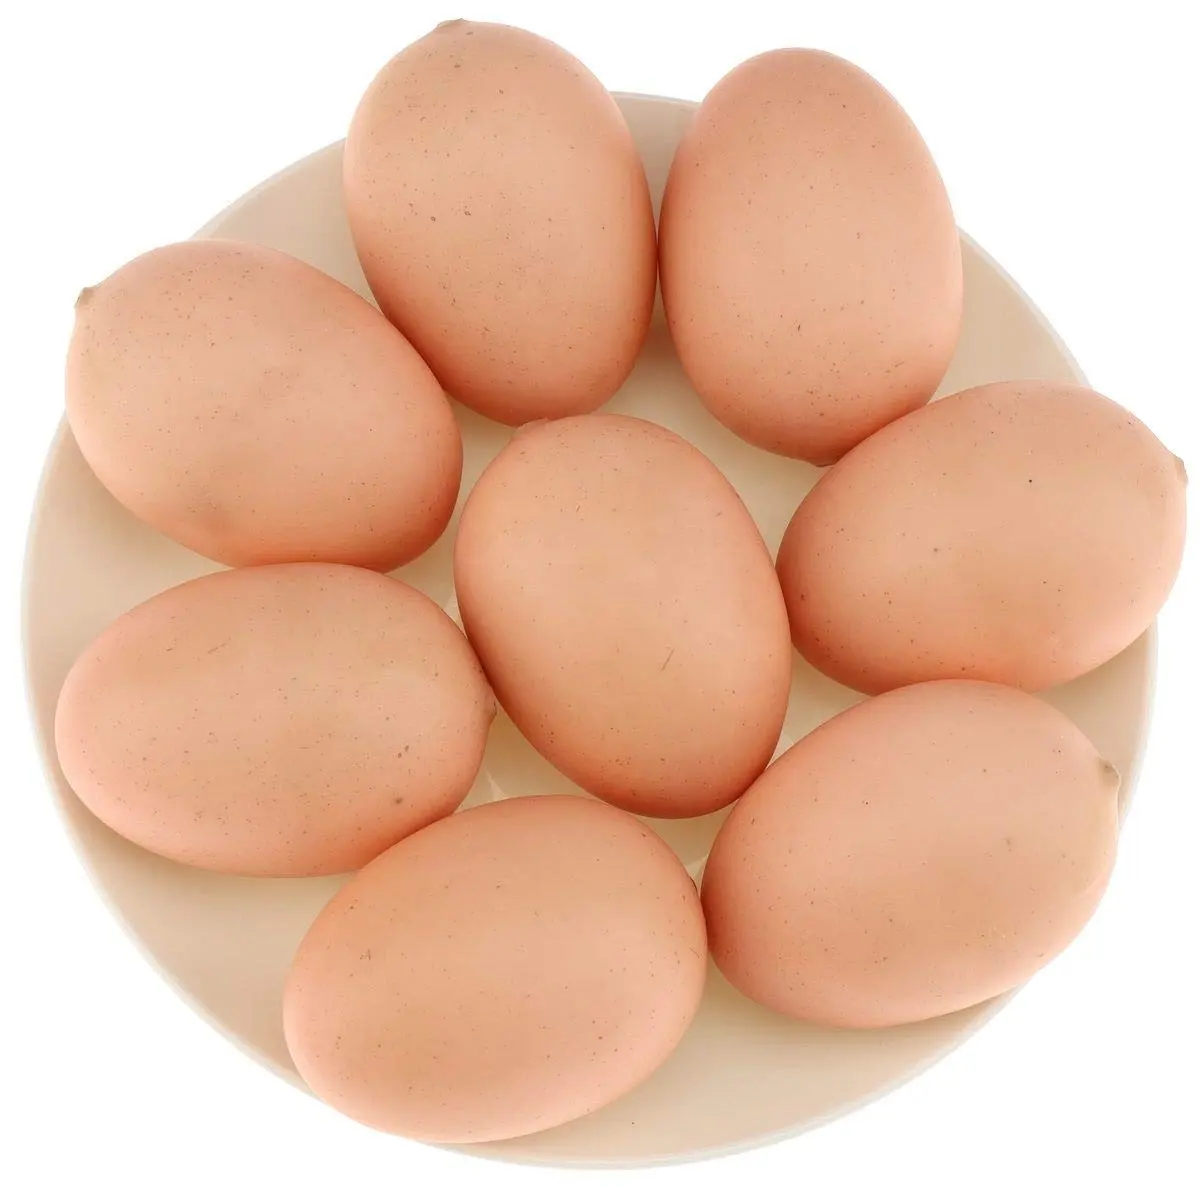 Wholesale Supplier Of Bulk Fresh Stock of White / Brown Shell Fresh Table Chicken Eggs